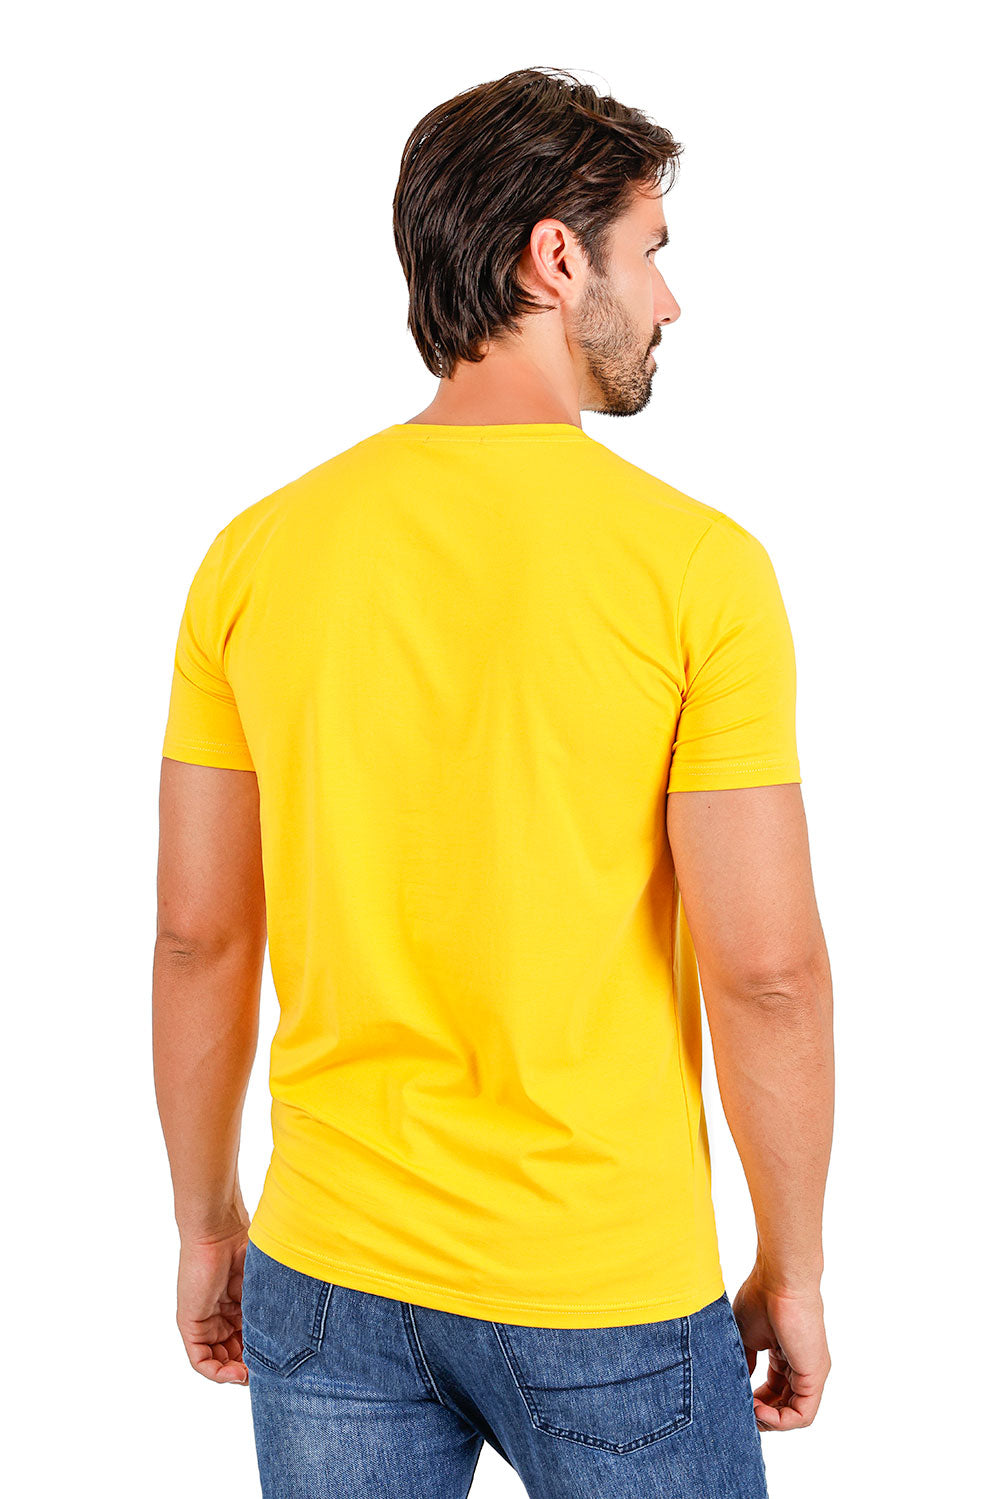 BARABAS Men's Solid Color V-neck T-shirts TV216 Mustard